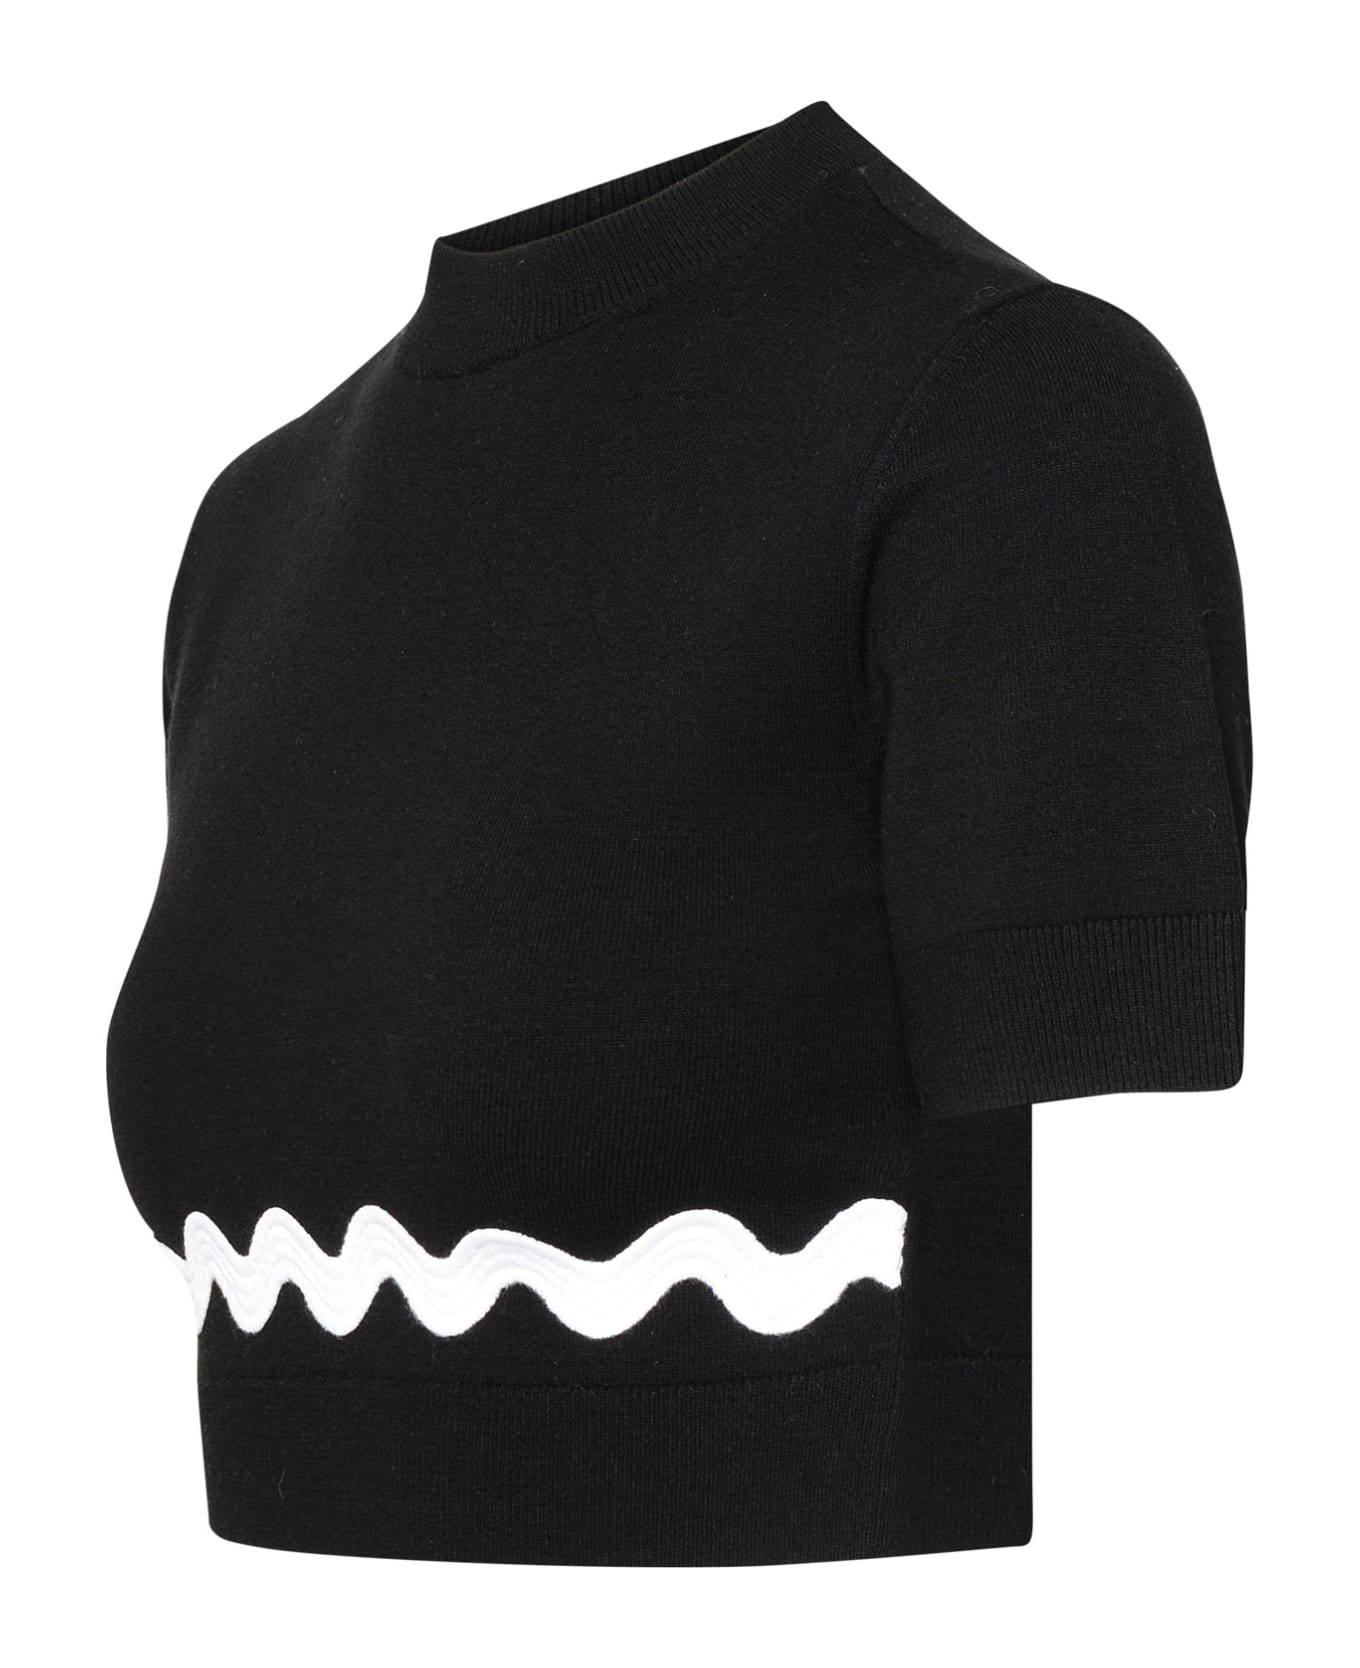 Patou Black Merino Wool Blend Sweater - Black ニットウェア